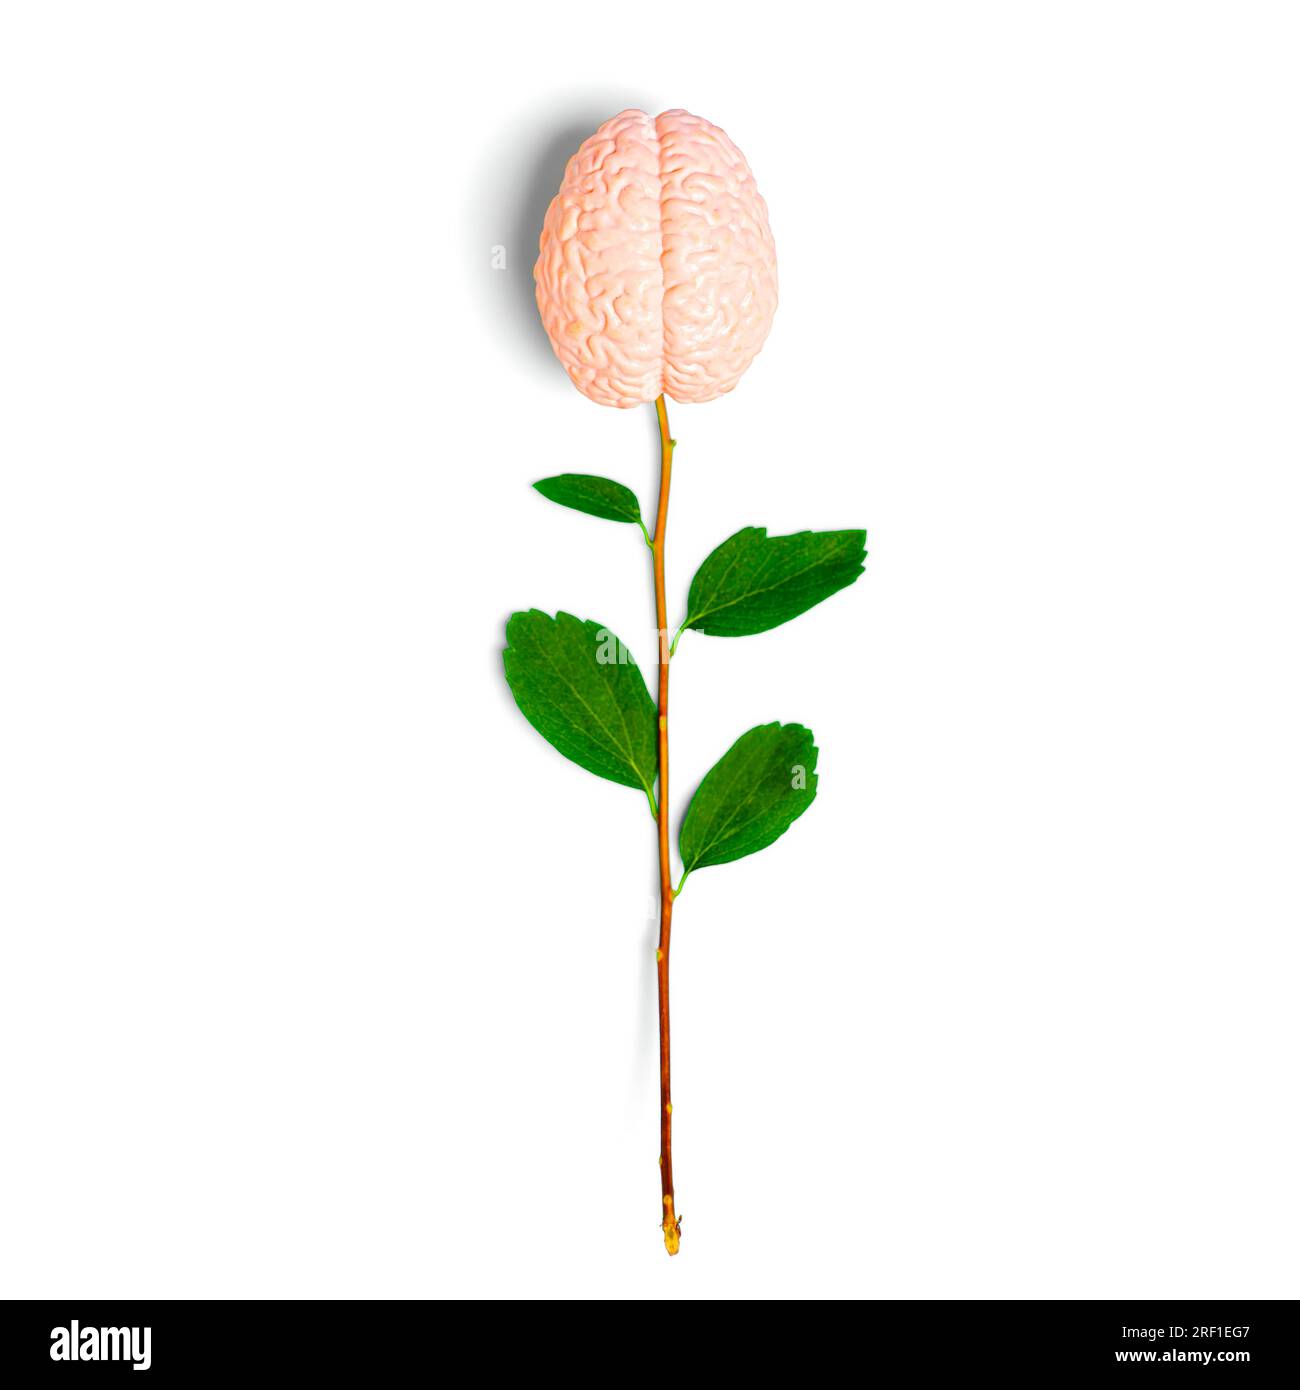 Kreatives Gehirn als Blütenzusammensetzung aus einem frischen Stamm mit grünen Blättern und einem auf weißem Hintergrund isolierten Spielzeughirnmodell. Stockfoto